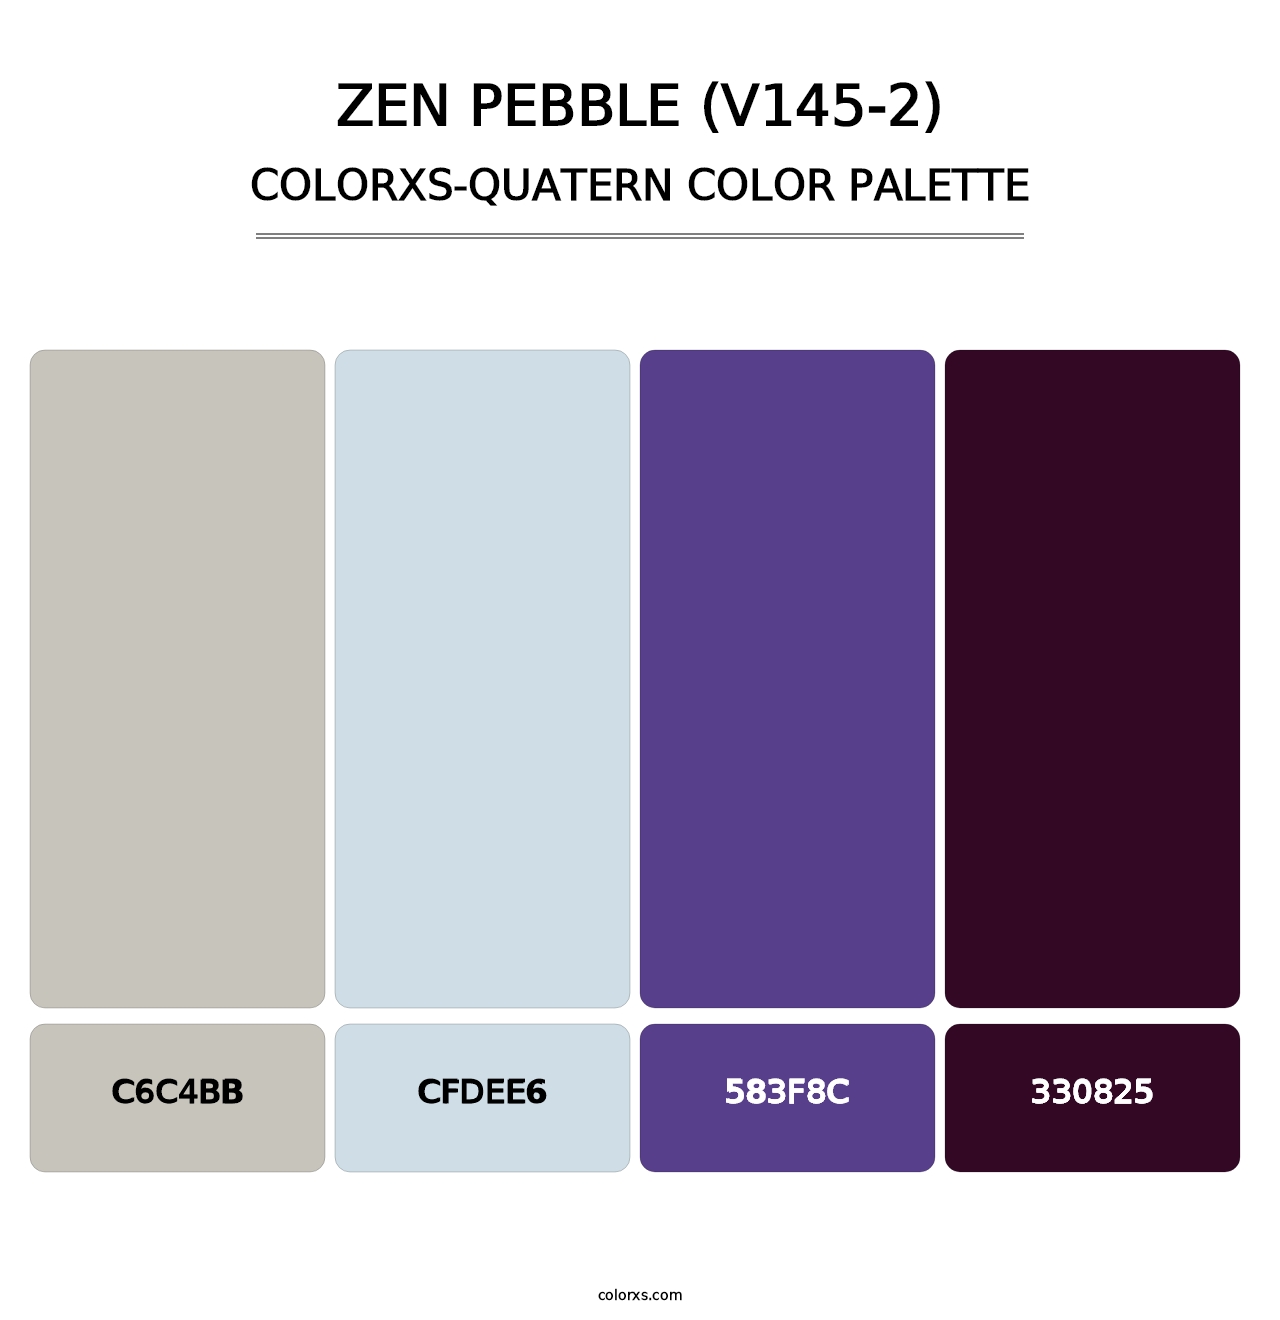 Zen Pebble (V145-2) - Colorxs Quatern Palette